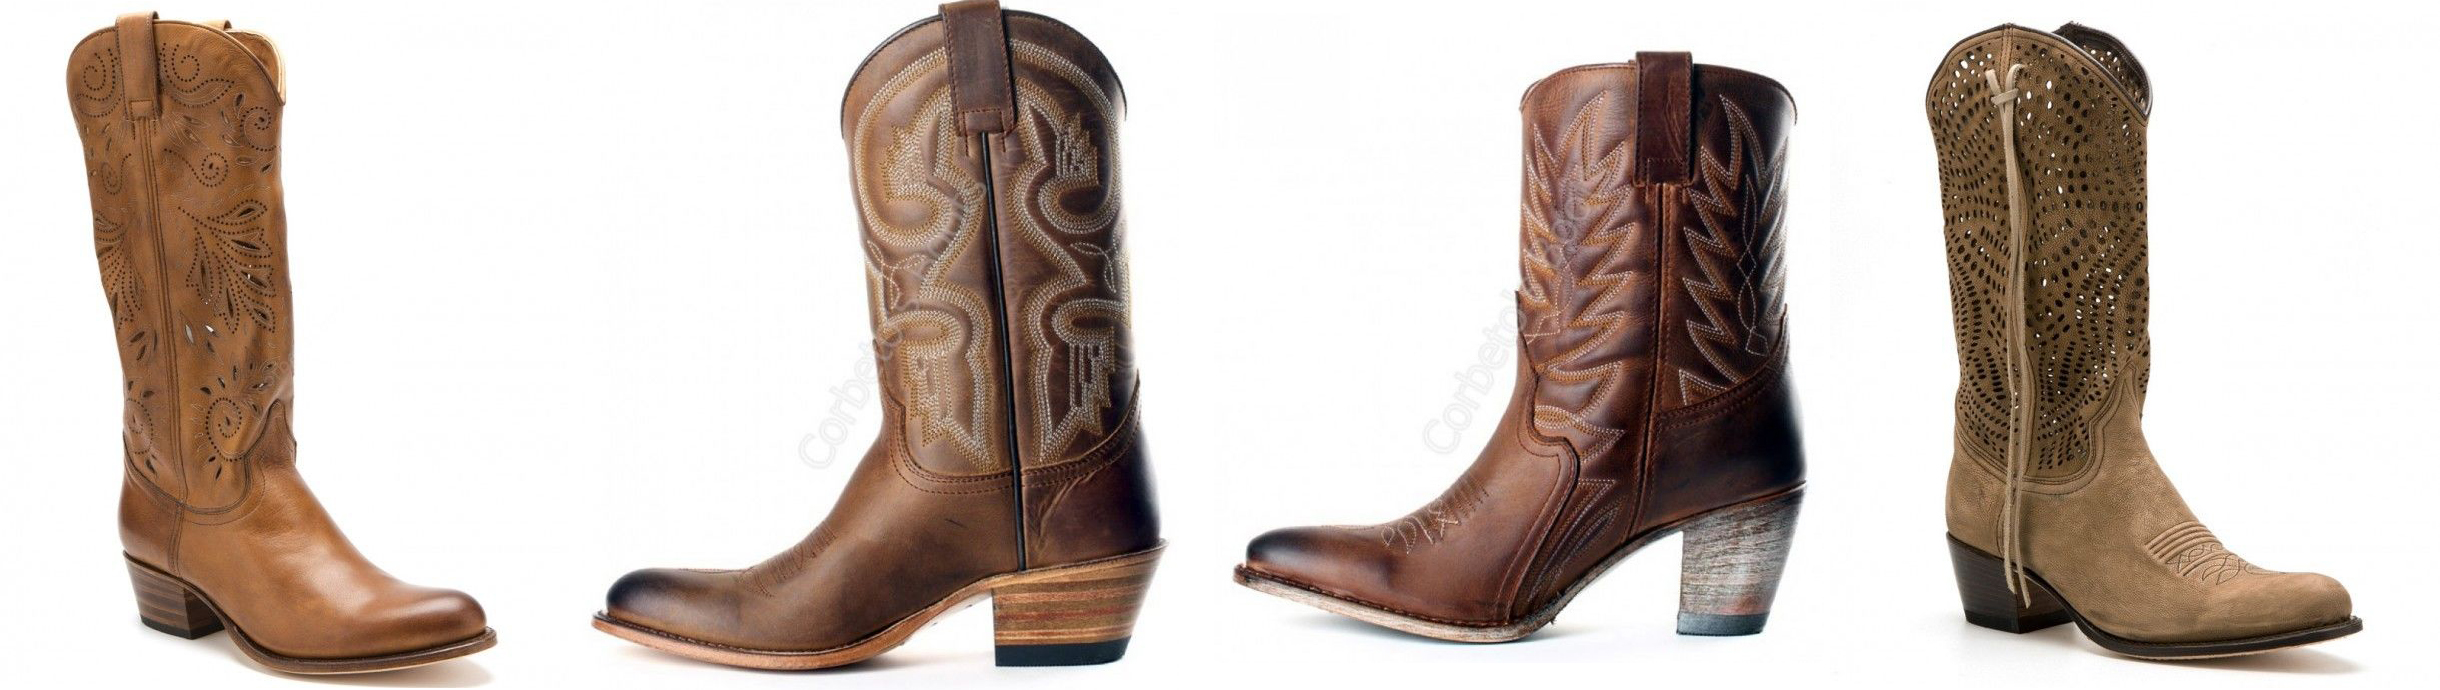 cowboy, tu estilo también - Corbeto's Boots Blog